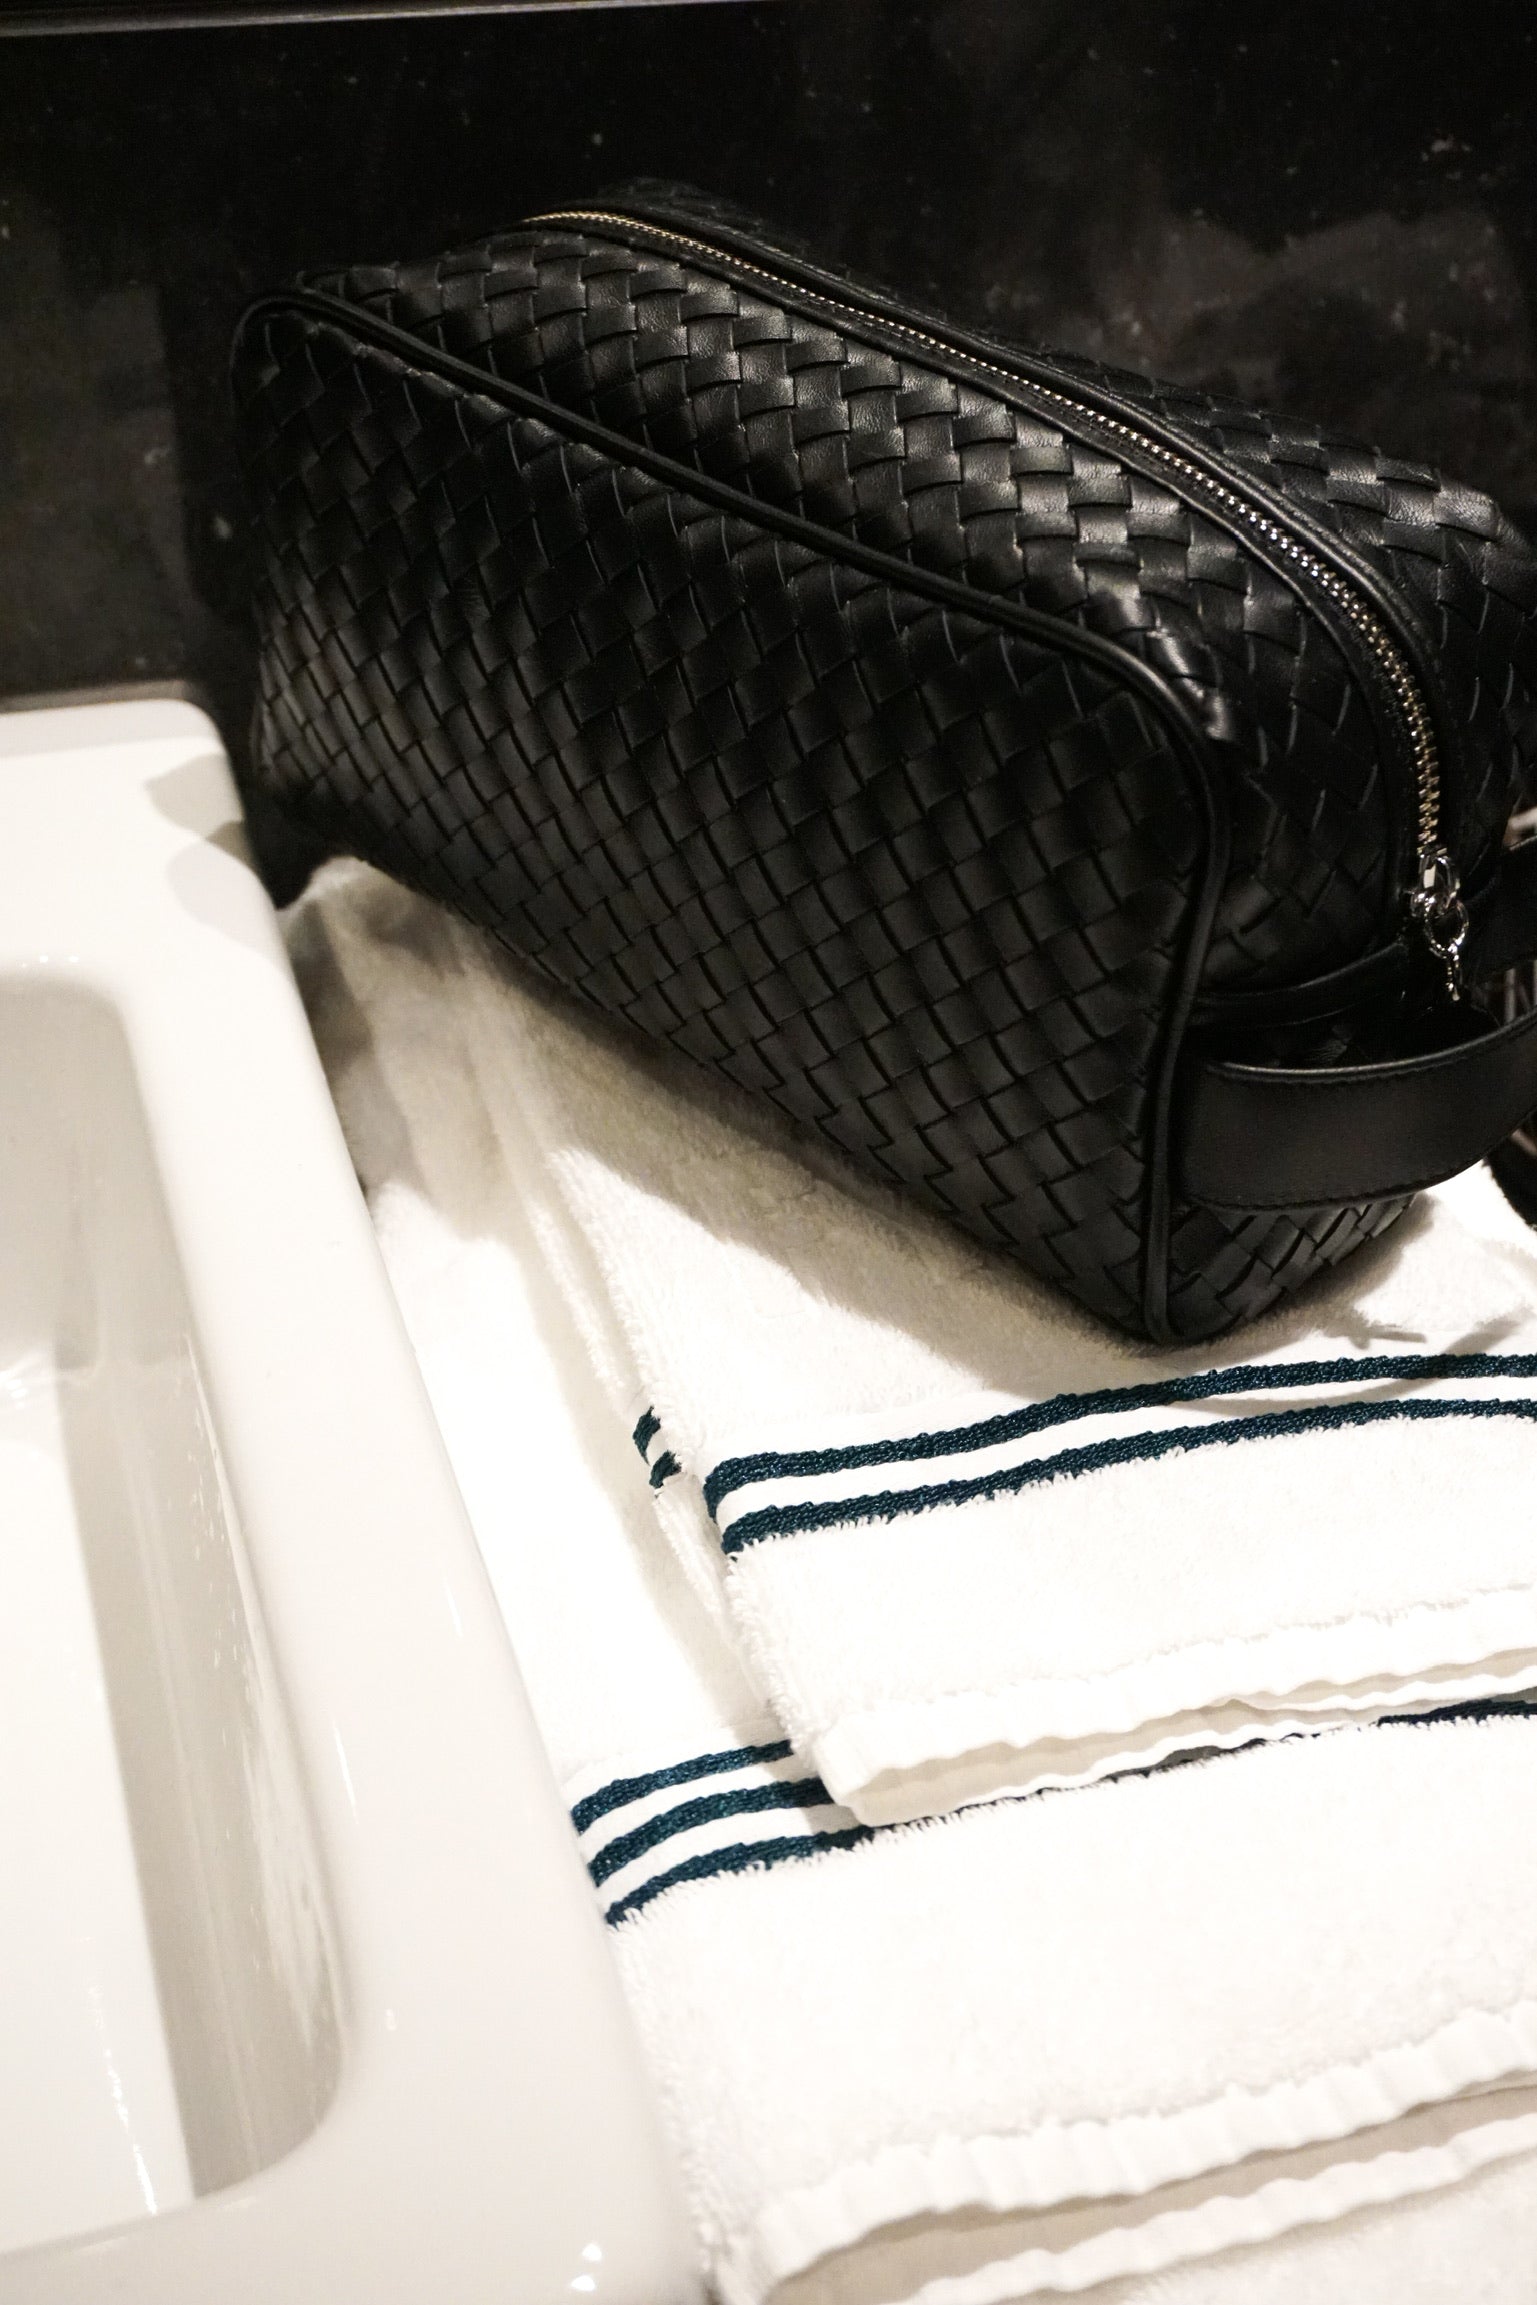 Ribichini Secrets toalettmappe i sort på hvit vaskeservant med blådetaljert håndkle. Elegant kontrast mellom teksturer og farger.